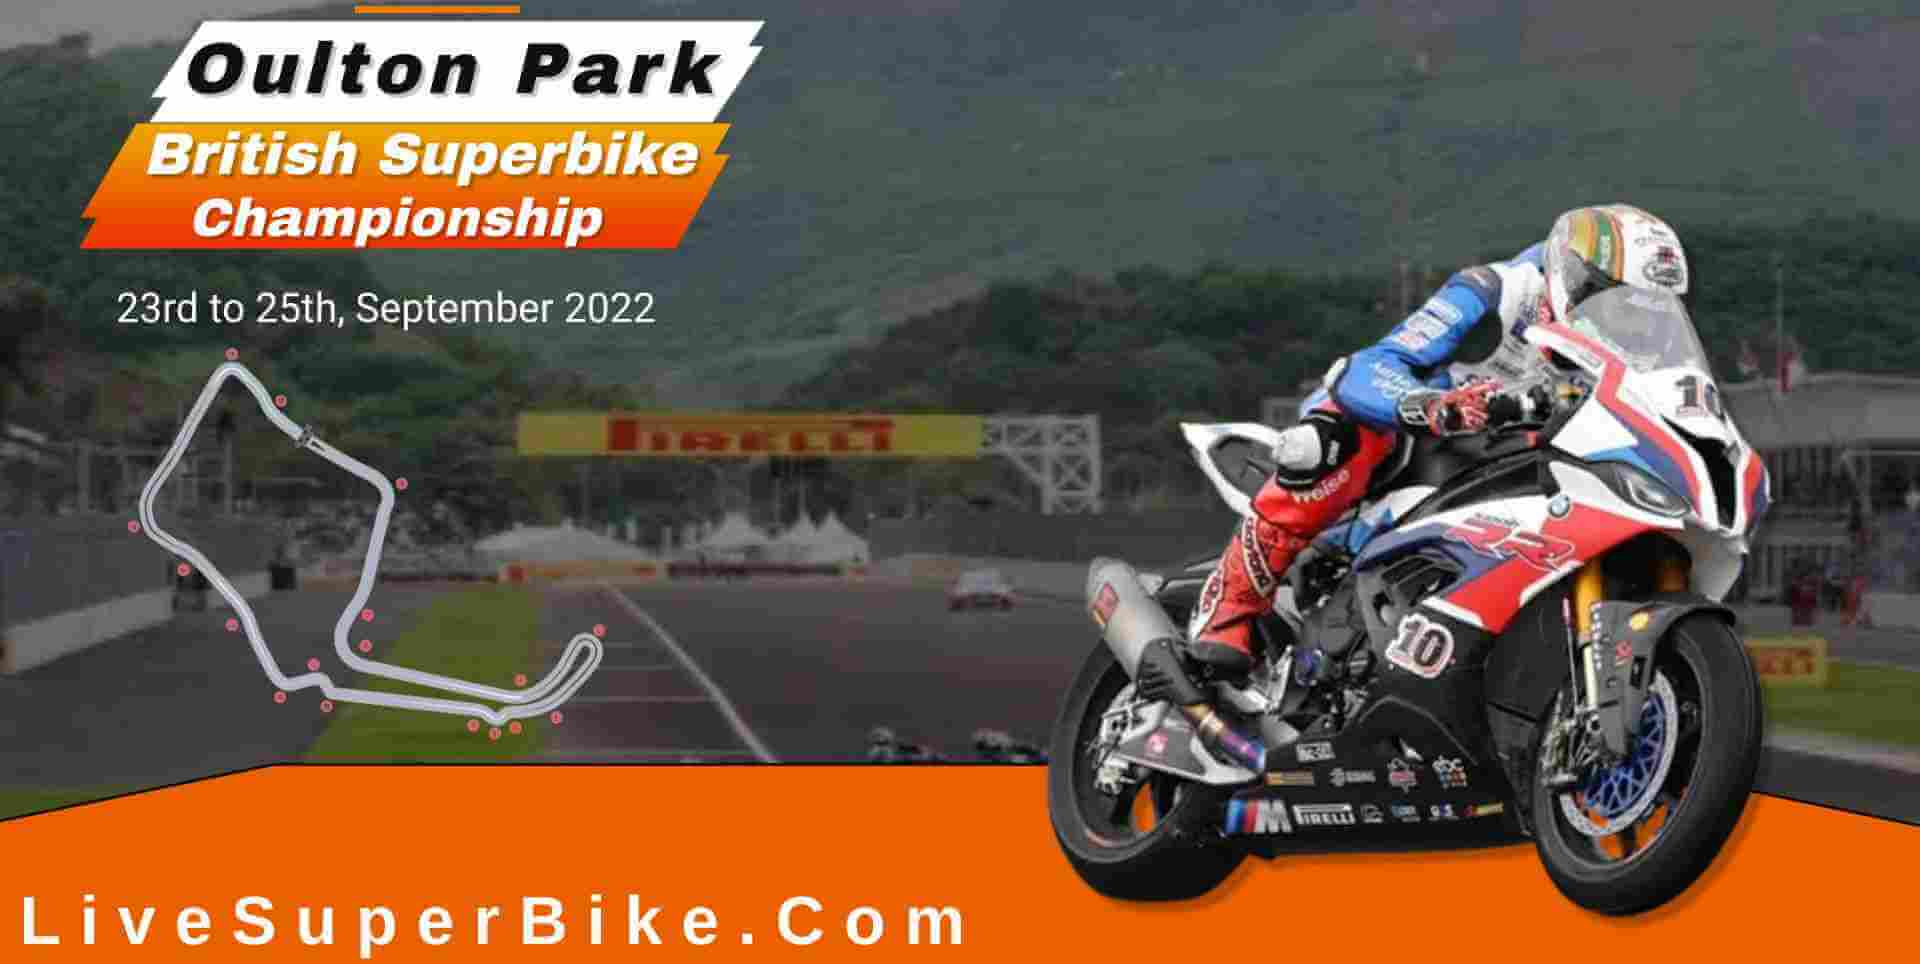 live-oulton-park-superbike-hd-online